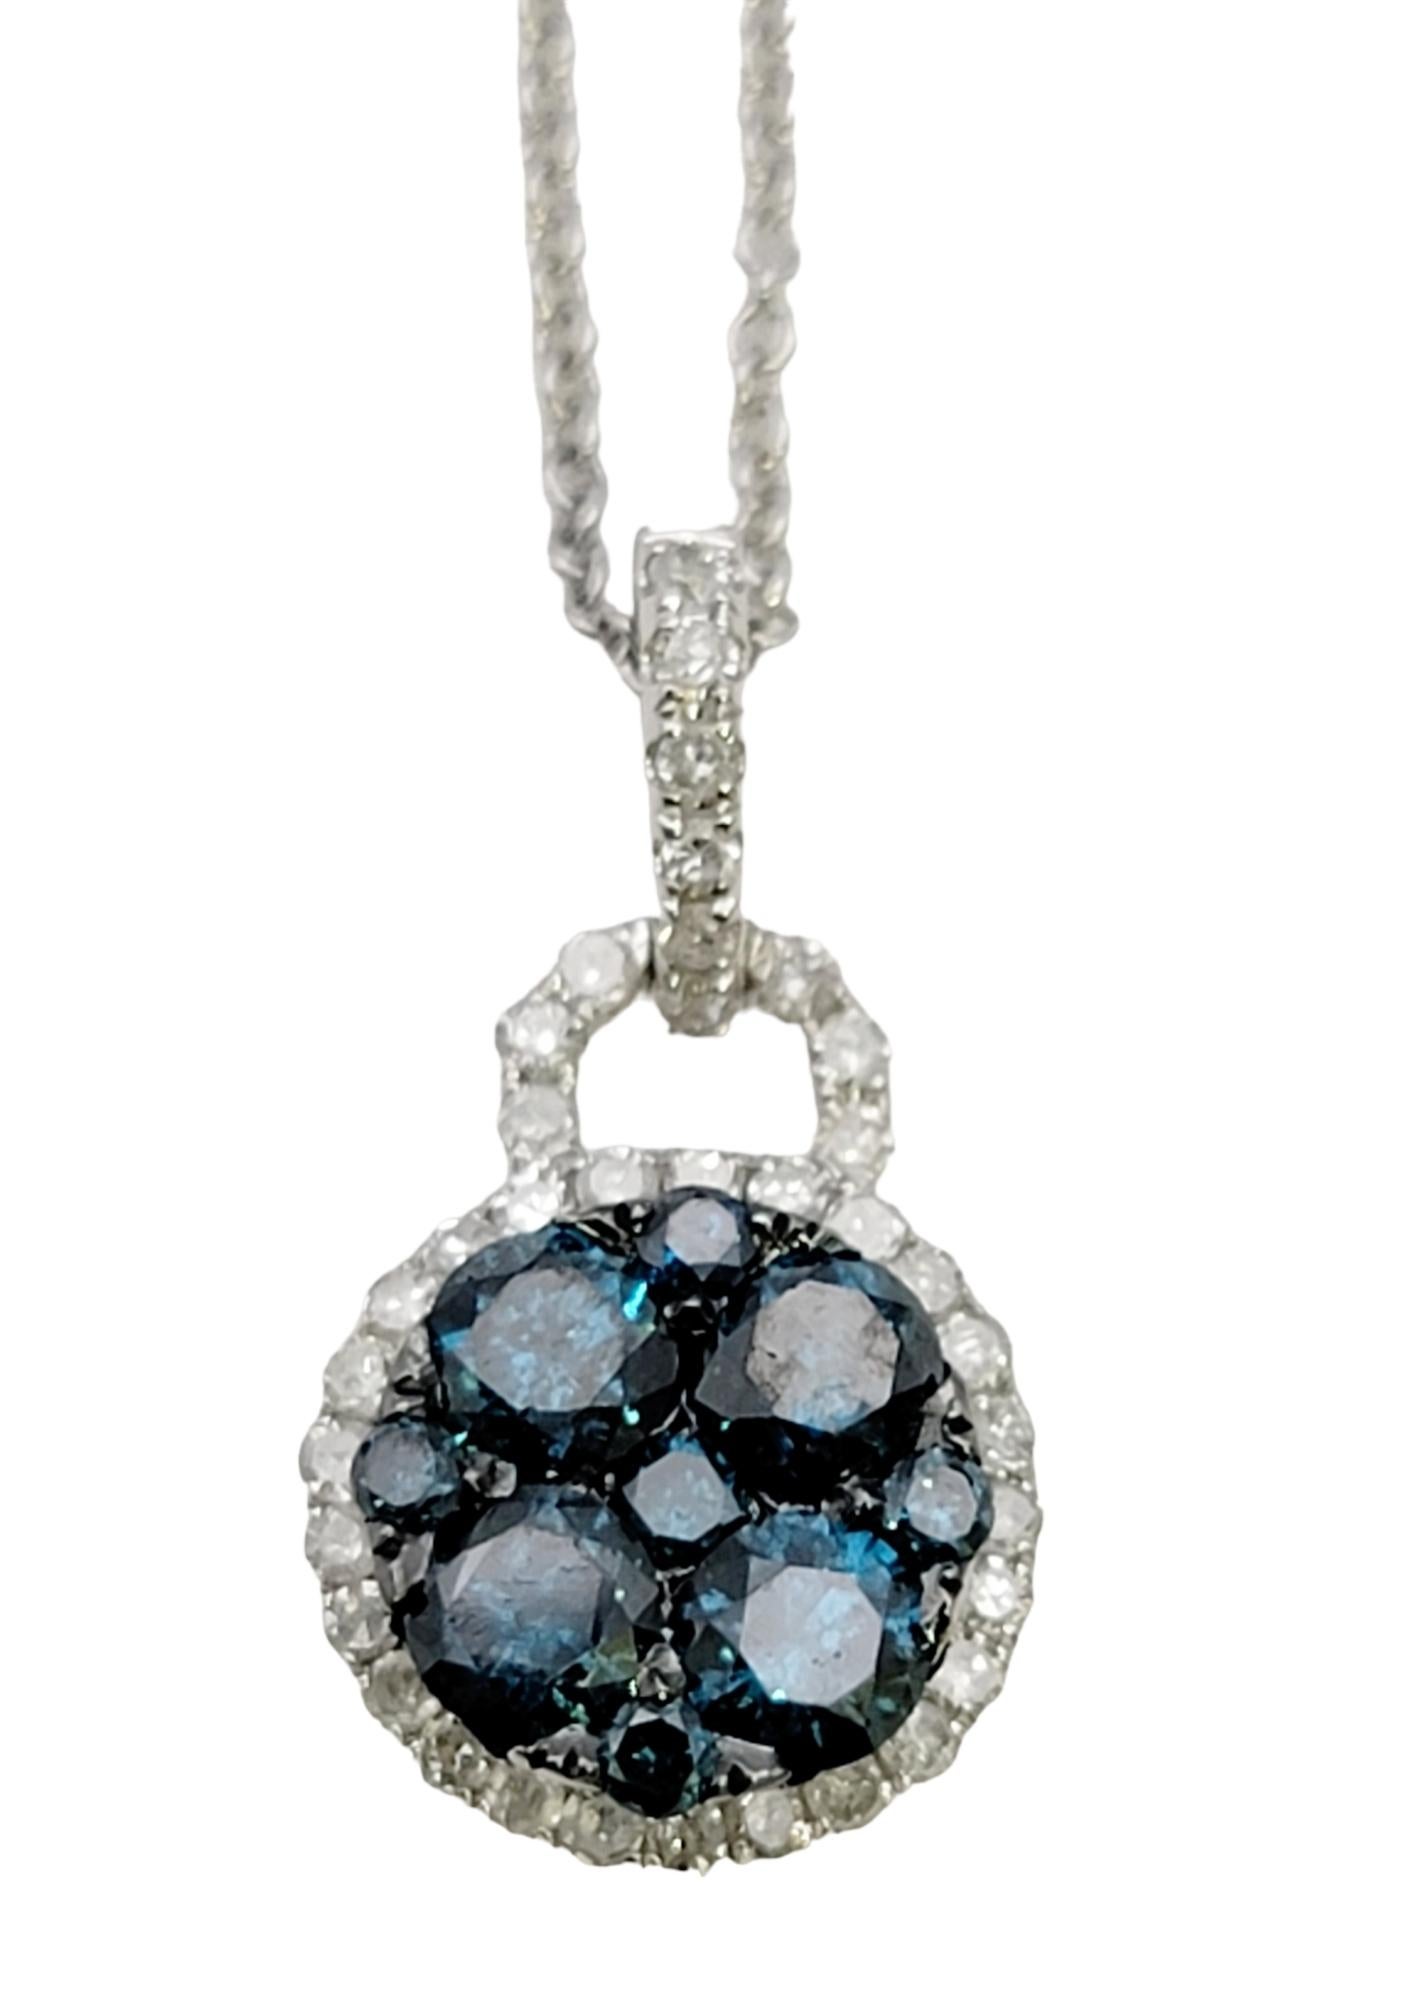 Diese funkelnde, moderne Diamant-Halskette von EFFY ist zierlich und bescheiden, aber unbestreitbar schön. Brillante fancy blaue Naturdiamanten füllen das Zentrum des Anhängers, während eisweiße Diamanten die blauen Steine mit einem glitzernden Halo